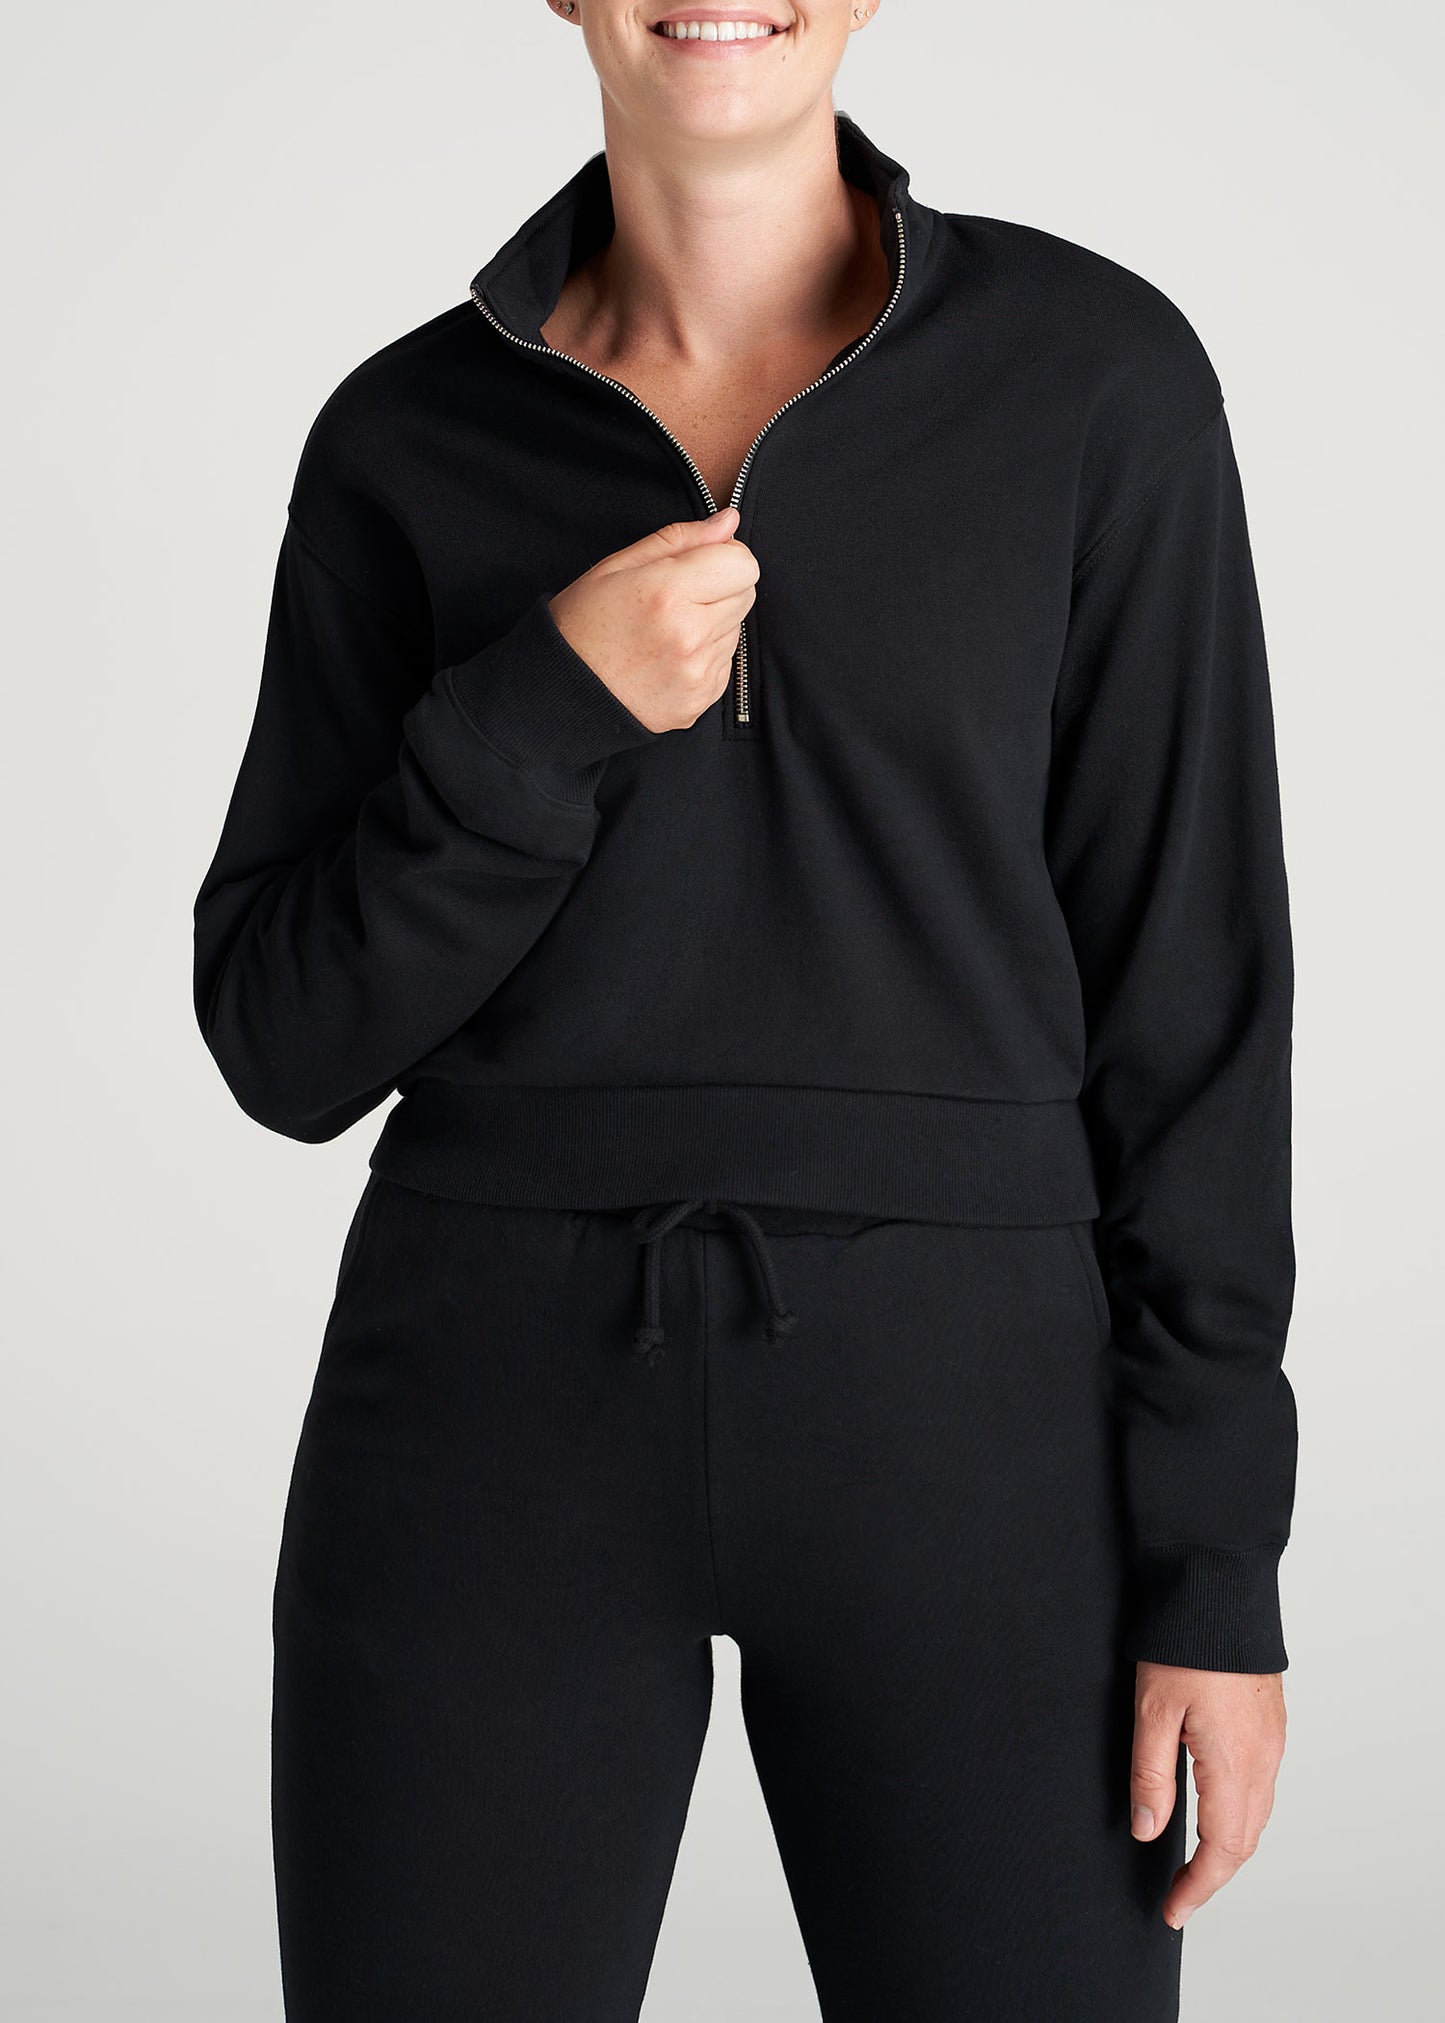 Wearever Cropped Half-Zip Women's Tall Sweatshirt | American Tall